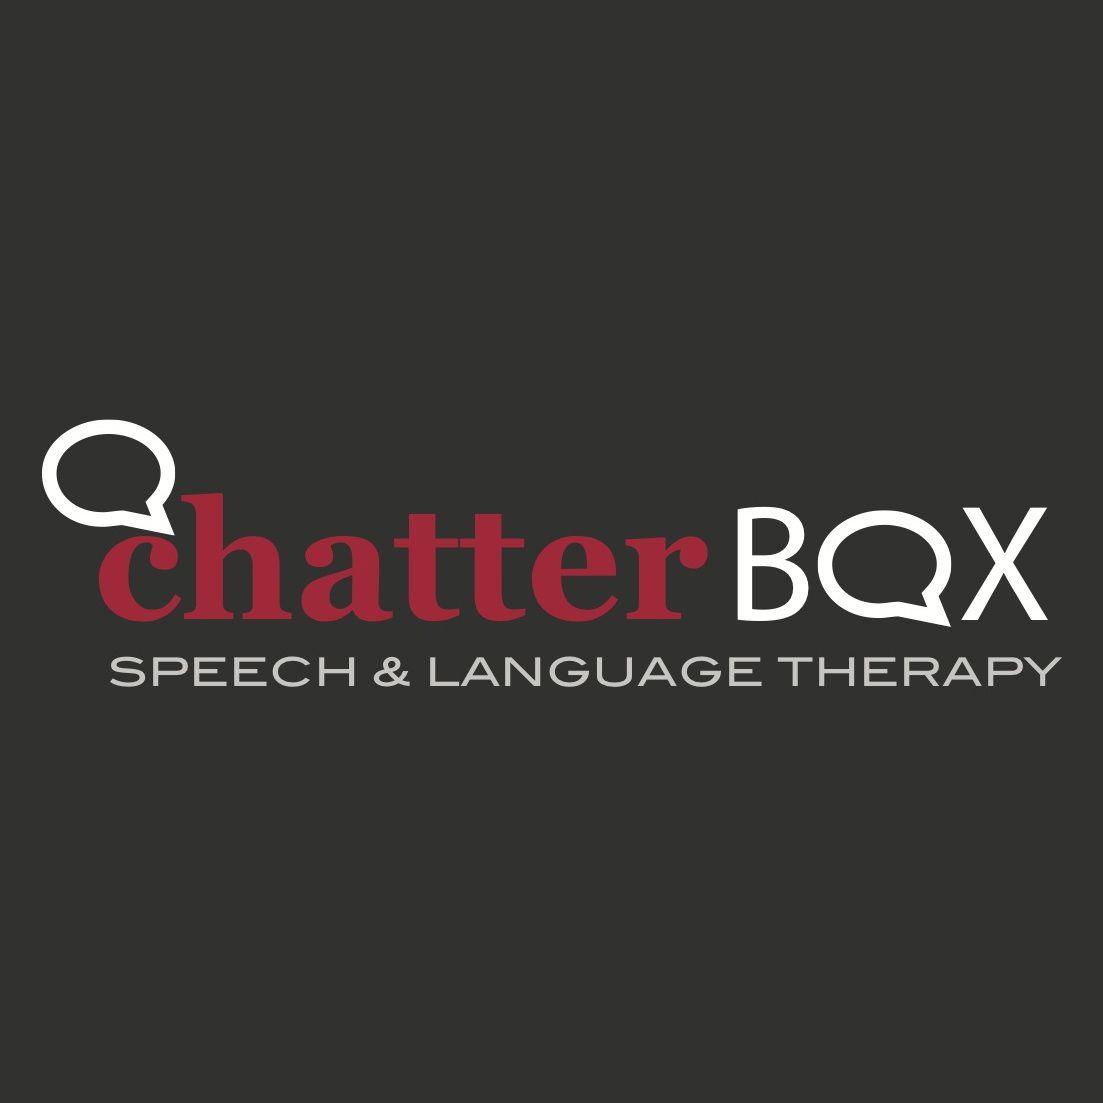 Chatterbox Logo - Chatterbox Logo Design. Logo Design. Logos design, Logos, Company logo